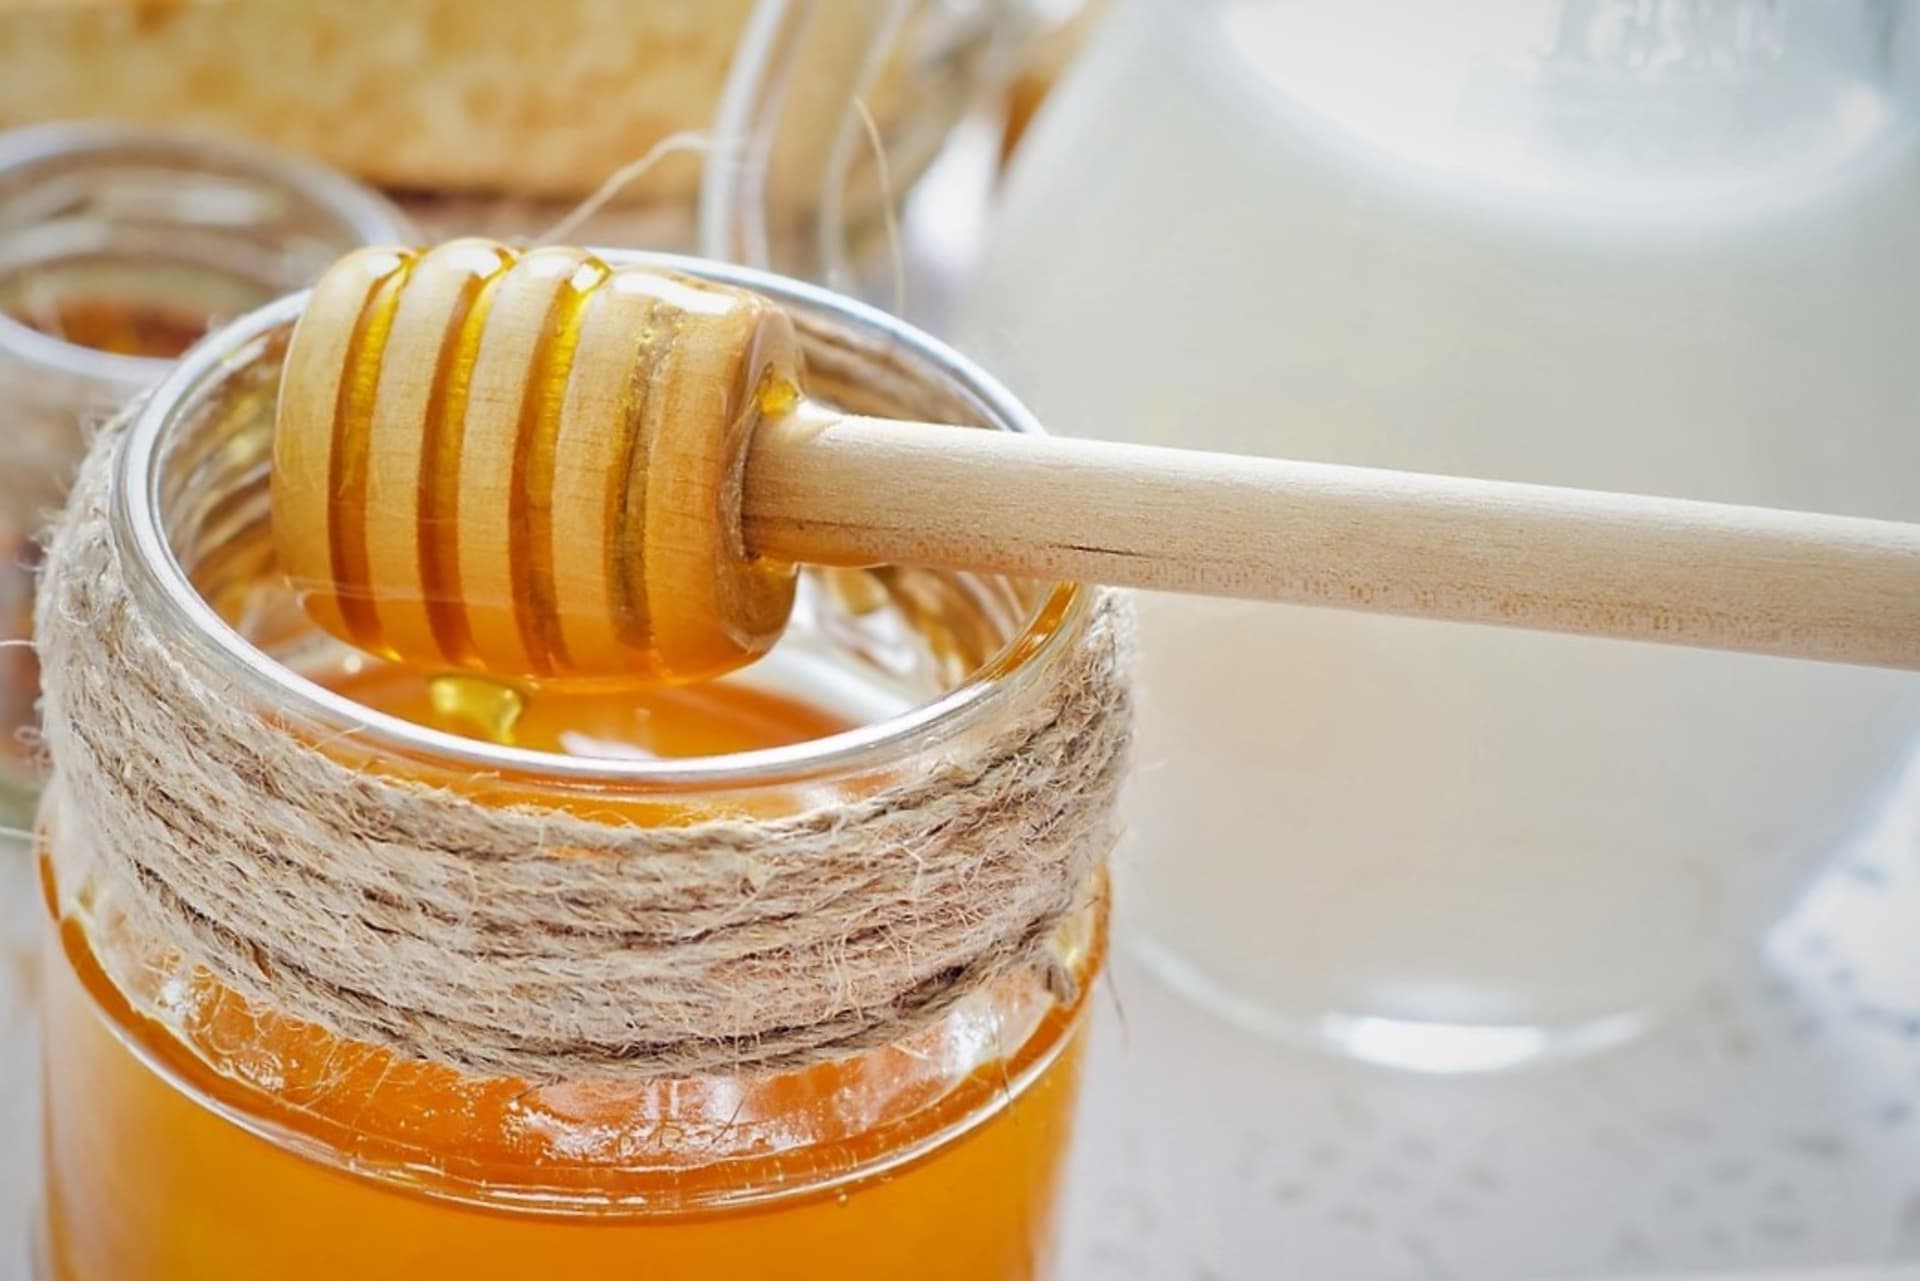 Med je tradičním pomocníkem jak při prevenci, tak při samotné léčbě chorob z nachlazení. Obsahuje optimální poměr bílkovin a minerálních látek, vitamínů, železa, kalcia, fosforu a rostlinných silic